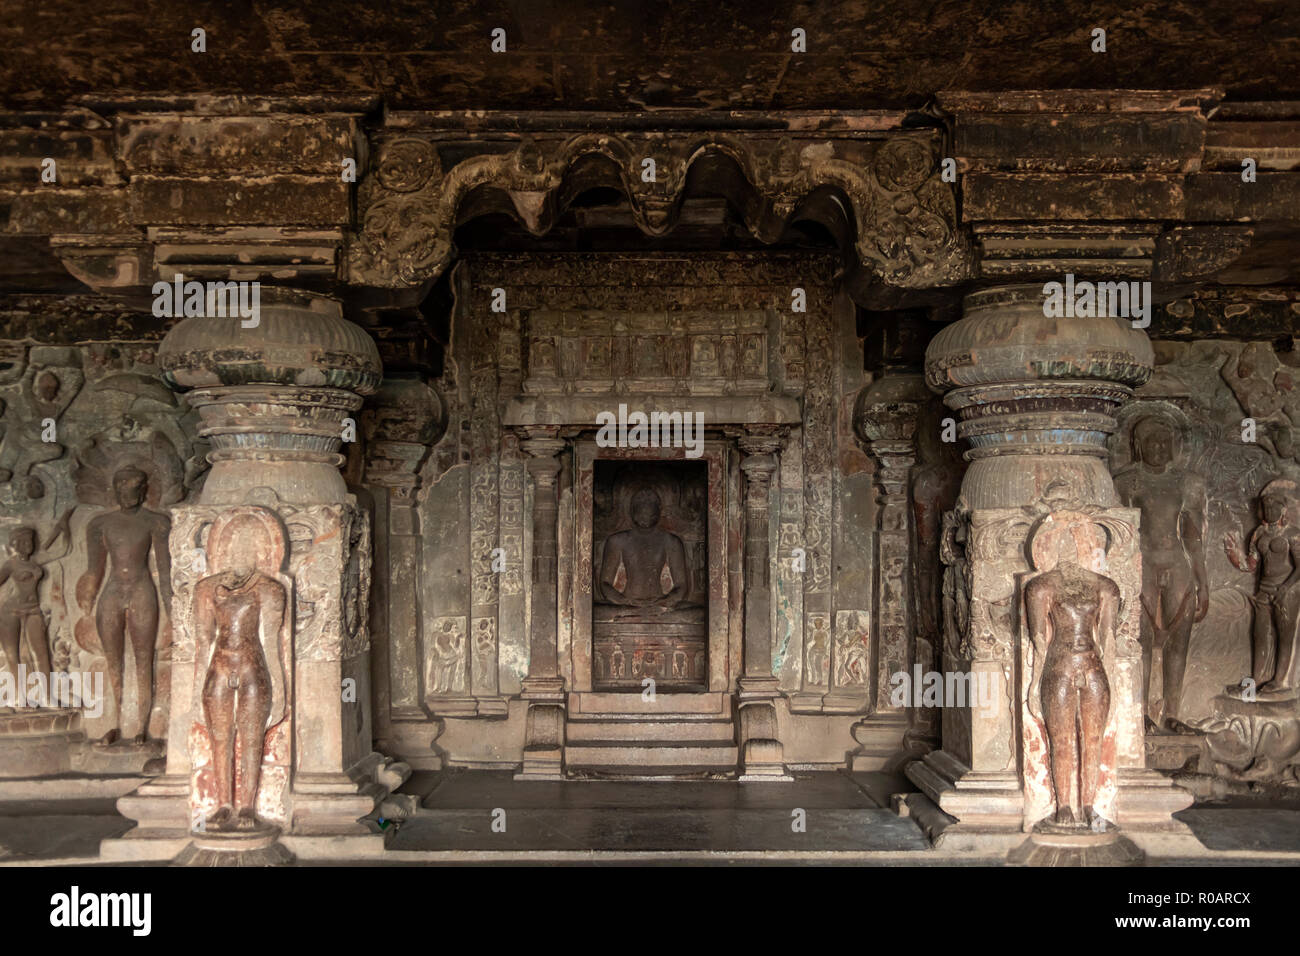 Lord Mahavira in Cave 31, Ellora Caves, near Aurangabad, Maharashtra, India Stock Photo